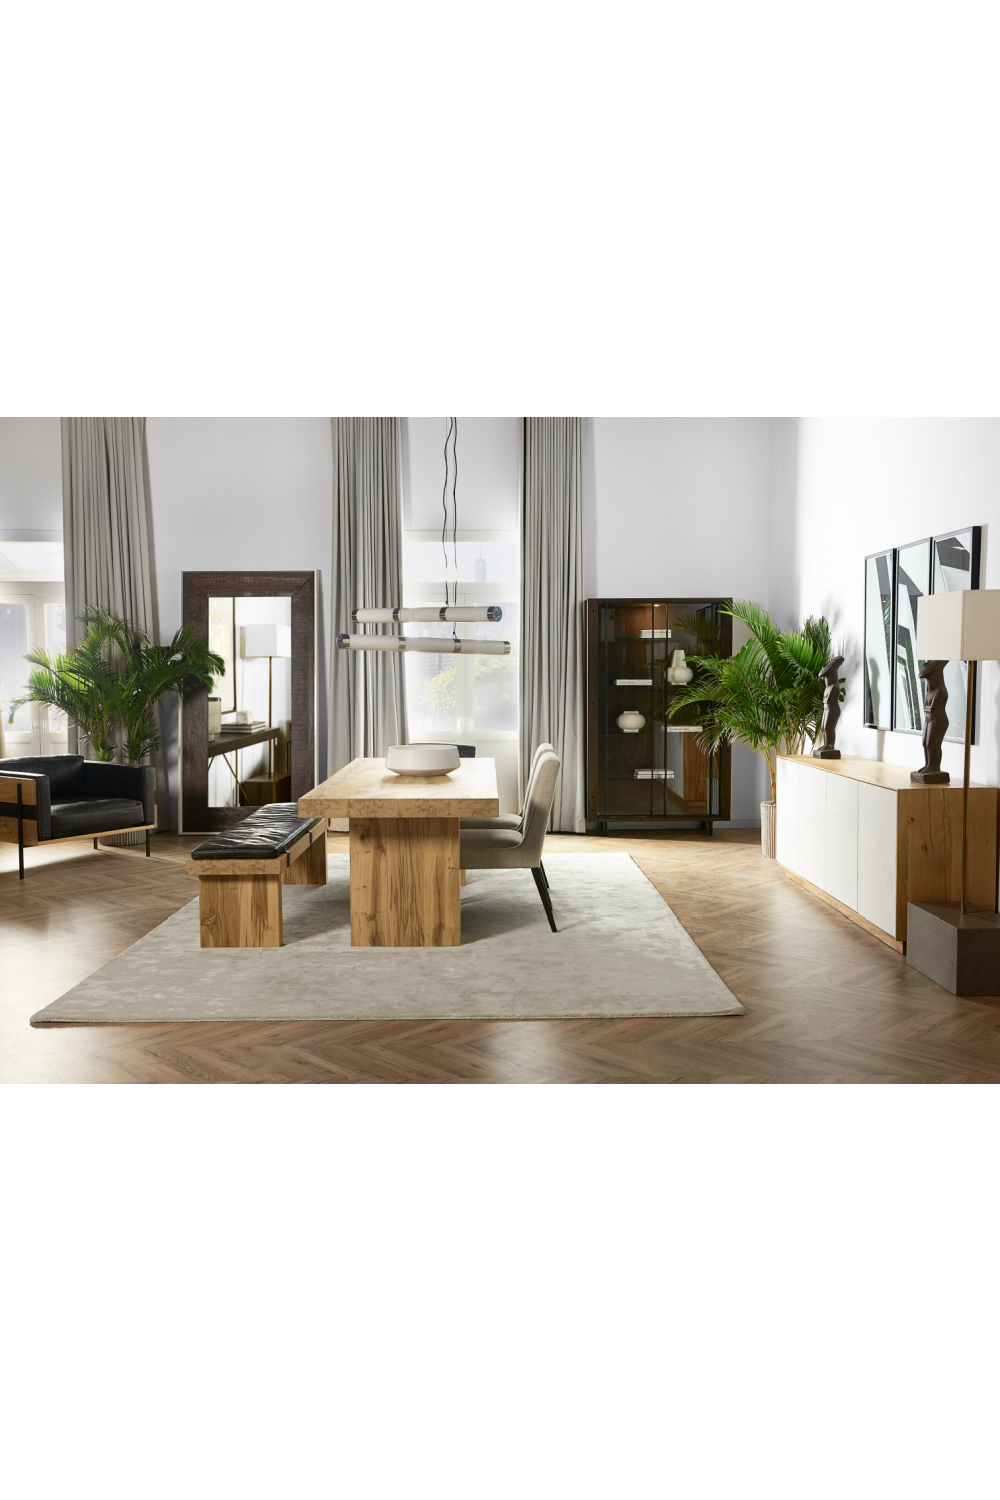 Wooden Framed Upholstered Sofa | Andrew Martin Carson II | Oroa.com